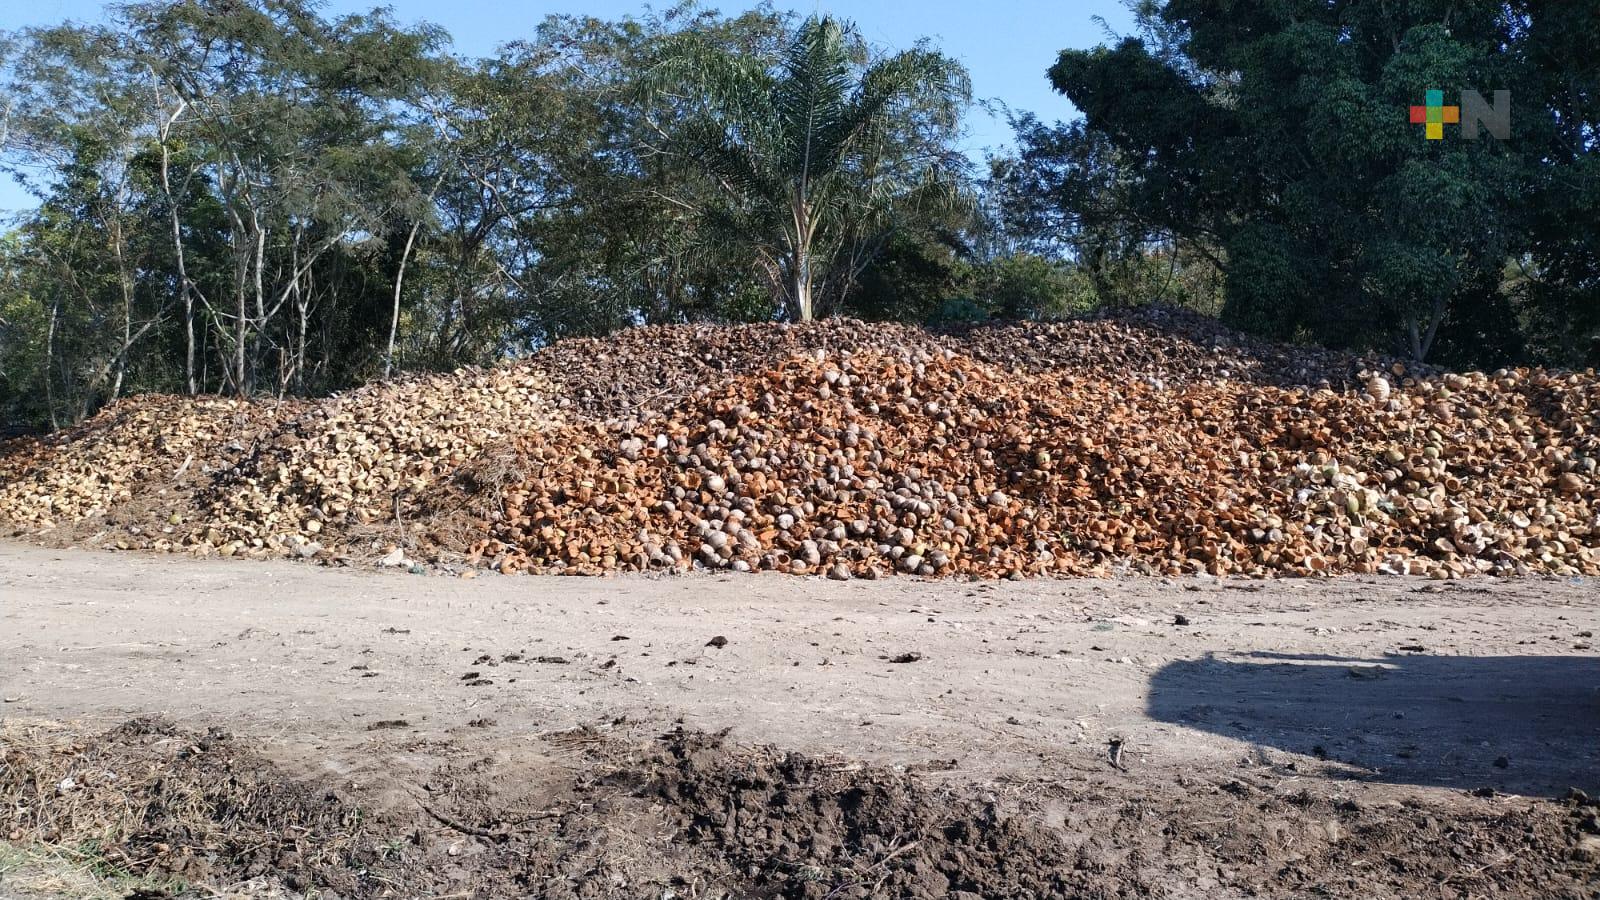 Procesan cáscara de coco en centro de compostaje municipal de Emiliano Zapata